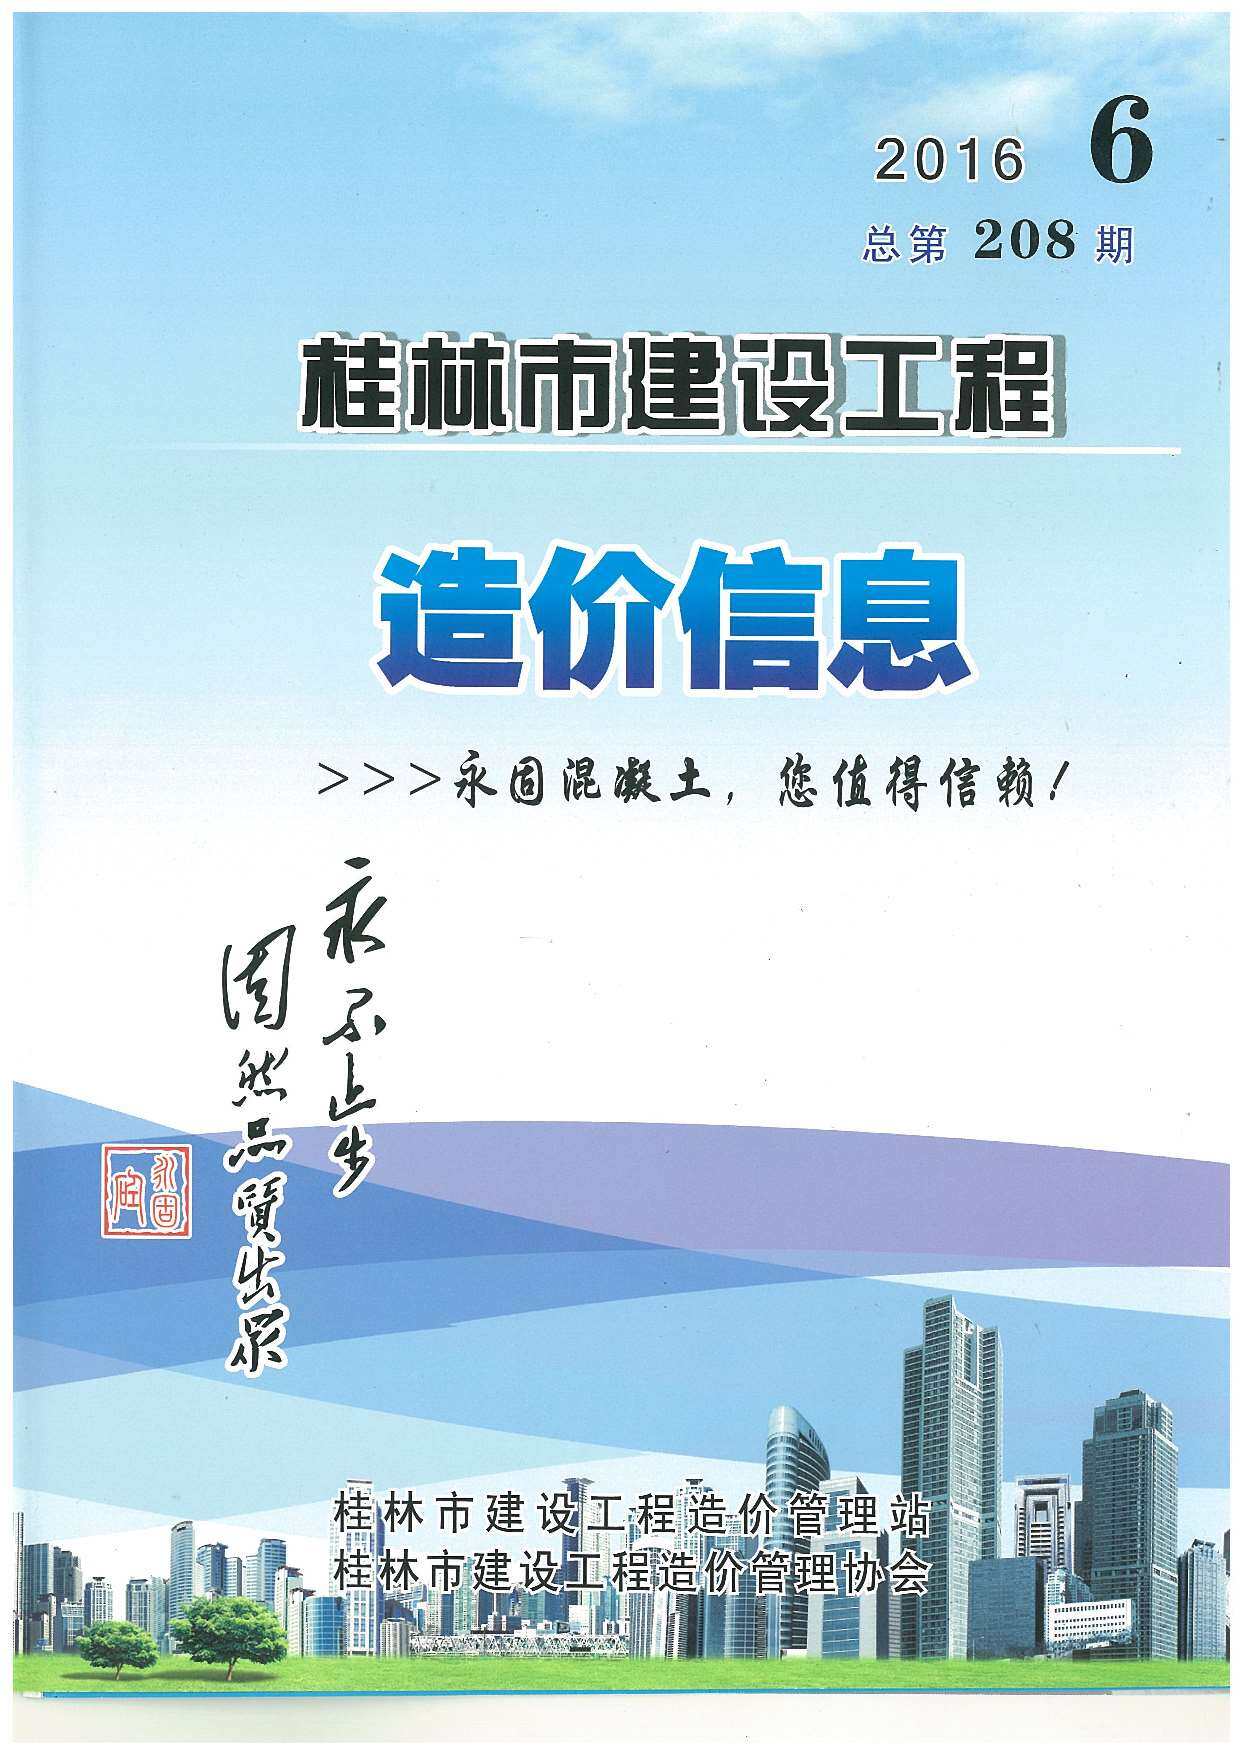 桂林市2016年6月工程造价信息期刊